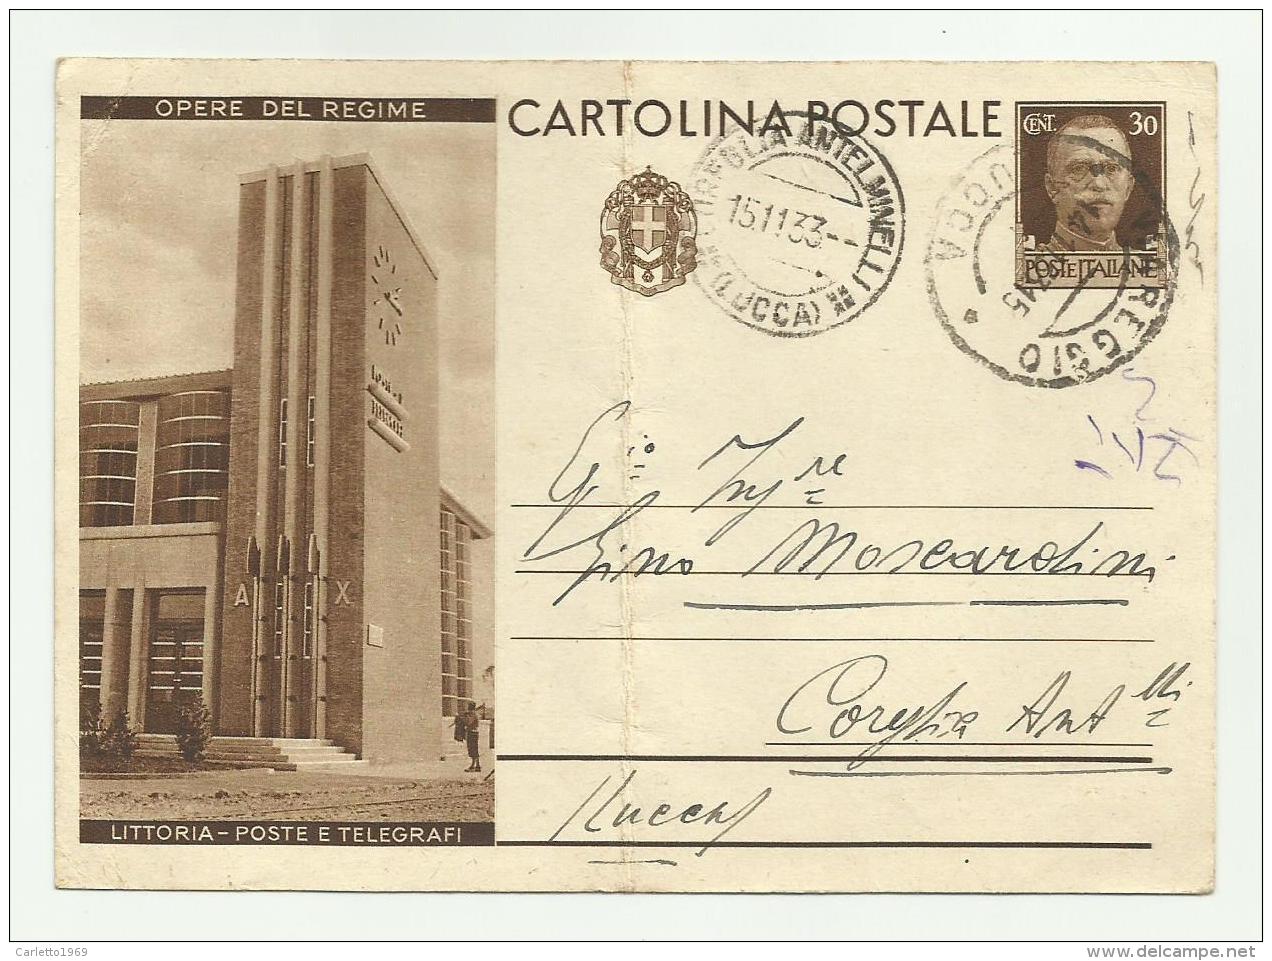 CARTOLINA INTERO  POSTALE - OPERE DEL REGIME  LITTROIA POSTE E TELEGRAFI  1933   VIAGGIATA FG ( PIEGA AL CENTRO ) - Stamped Stationery